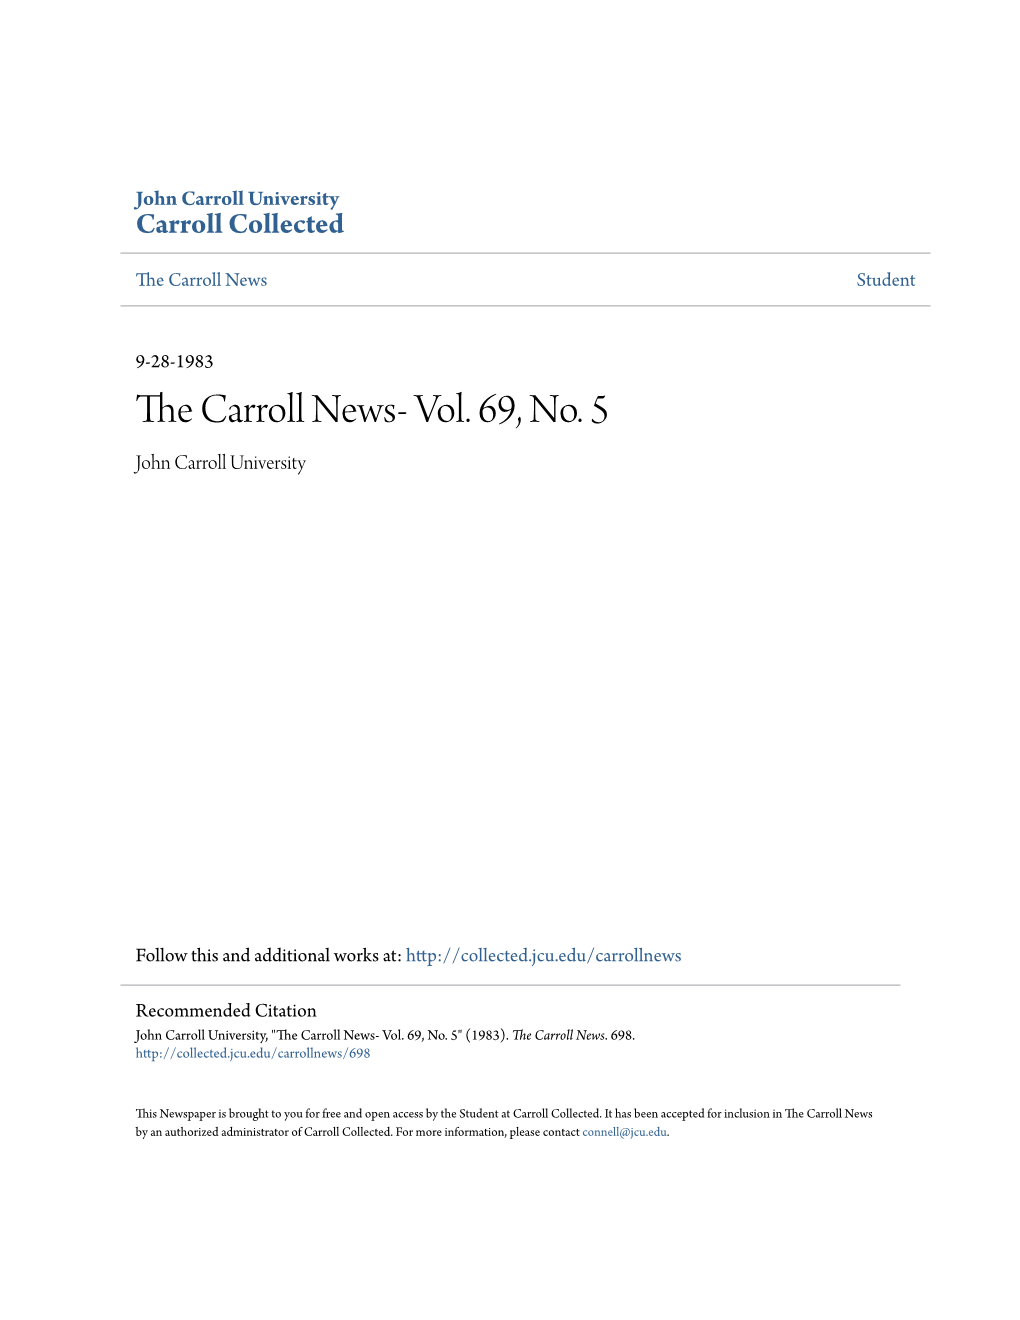 The Carroll News- Vol. 69, No. 5